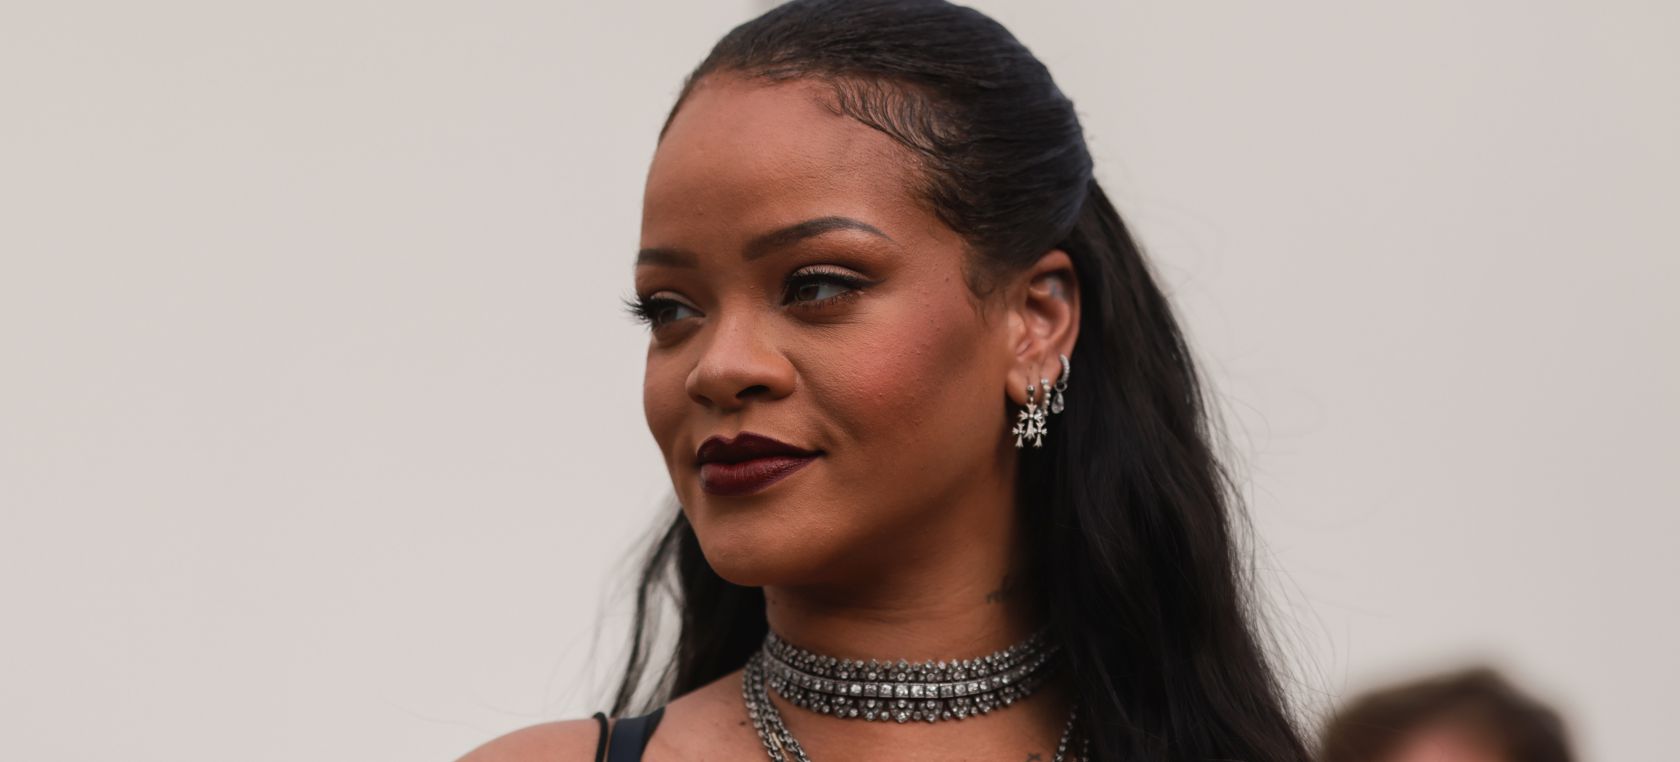 Así ha cambiado Rihanna: de militar a ir a la Super Bowl